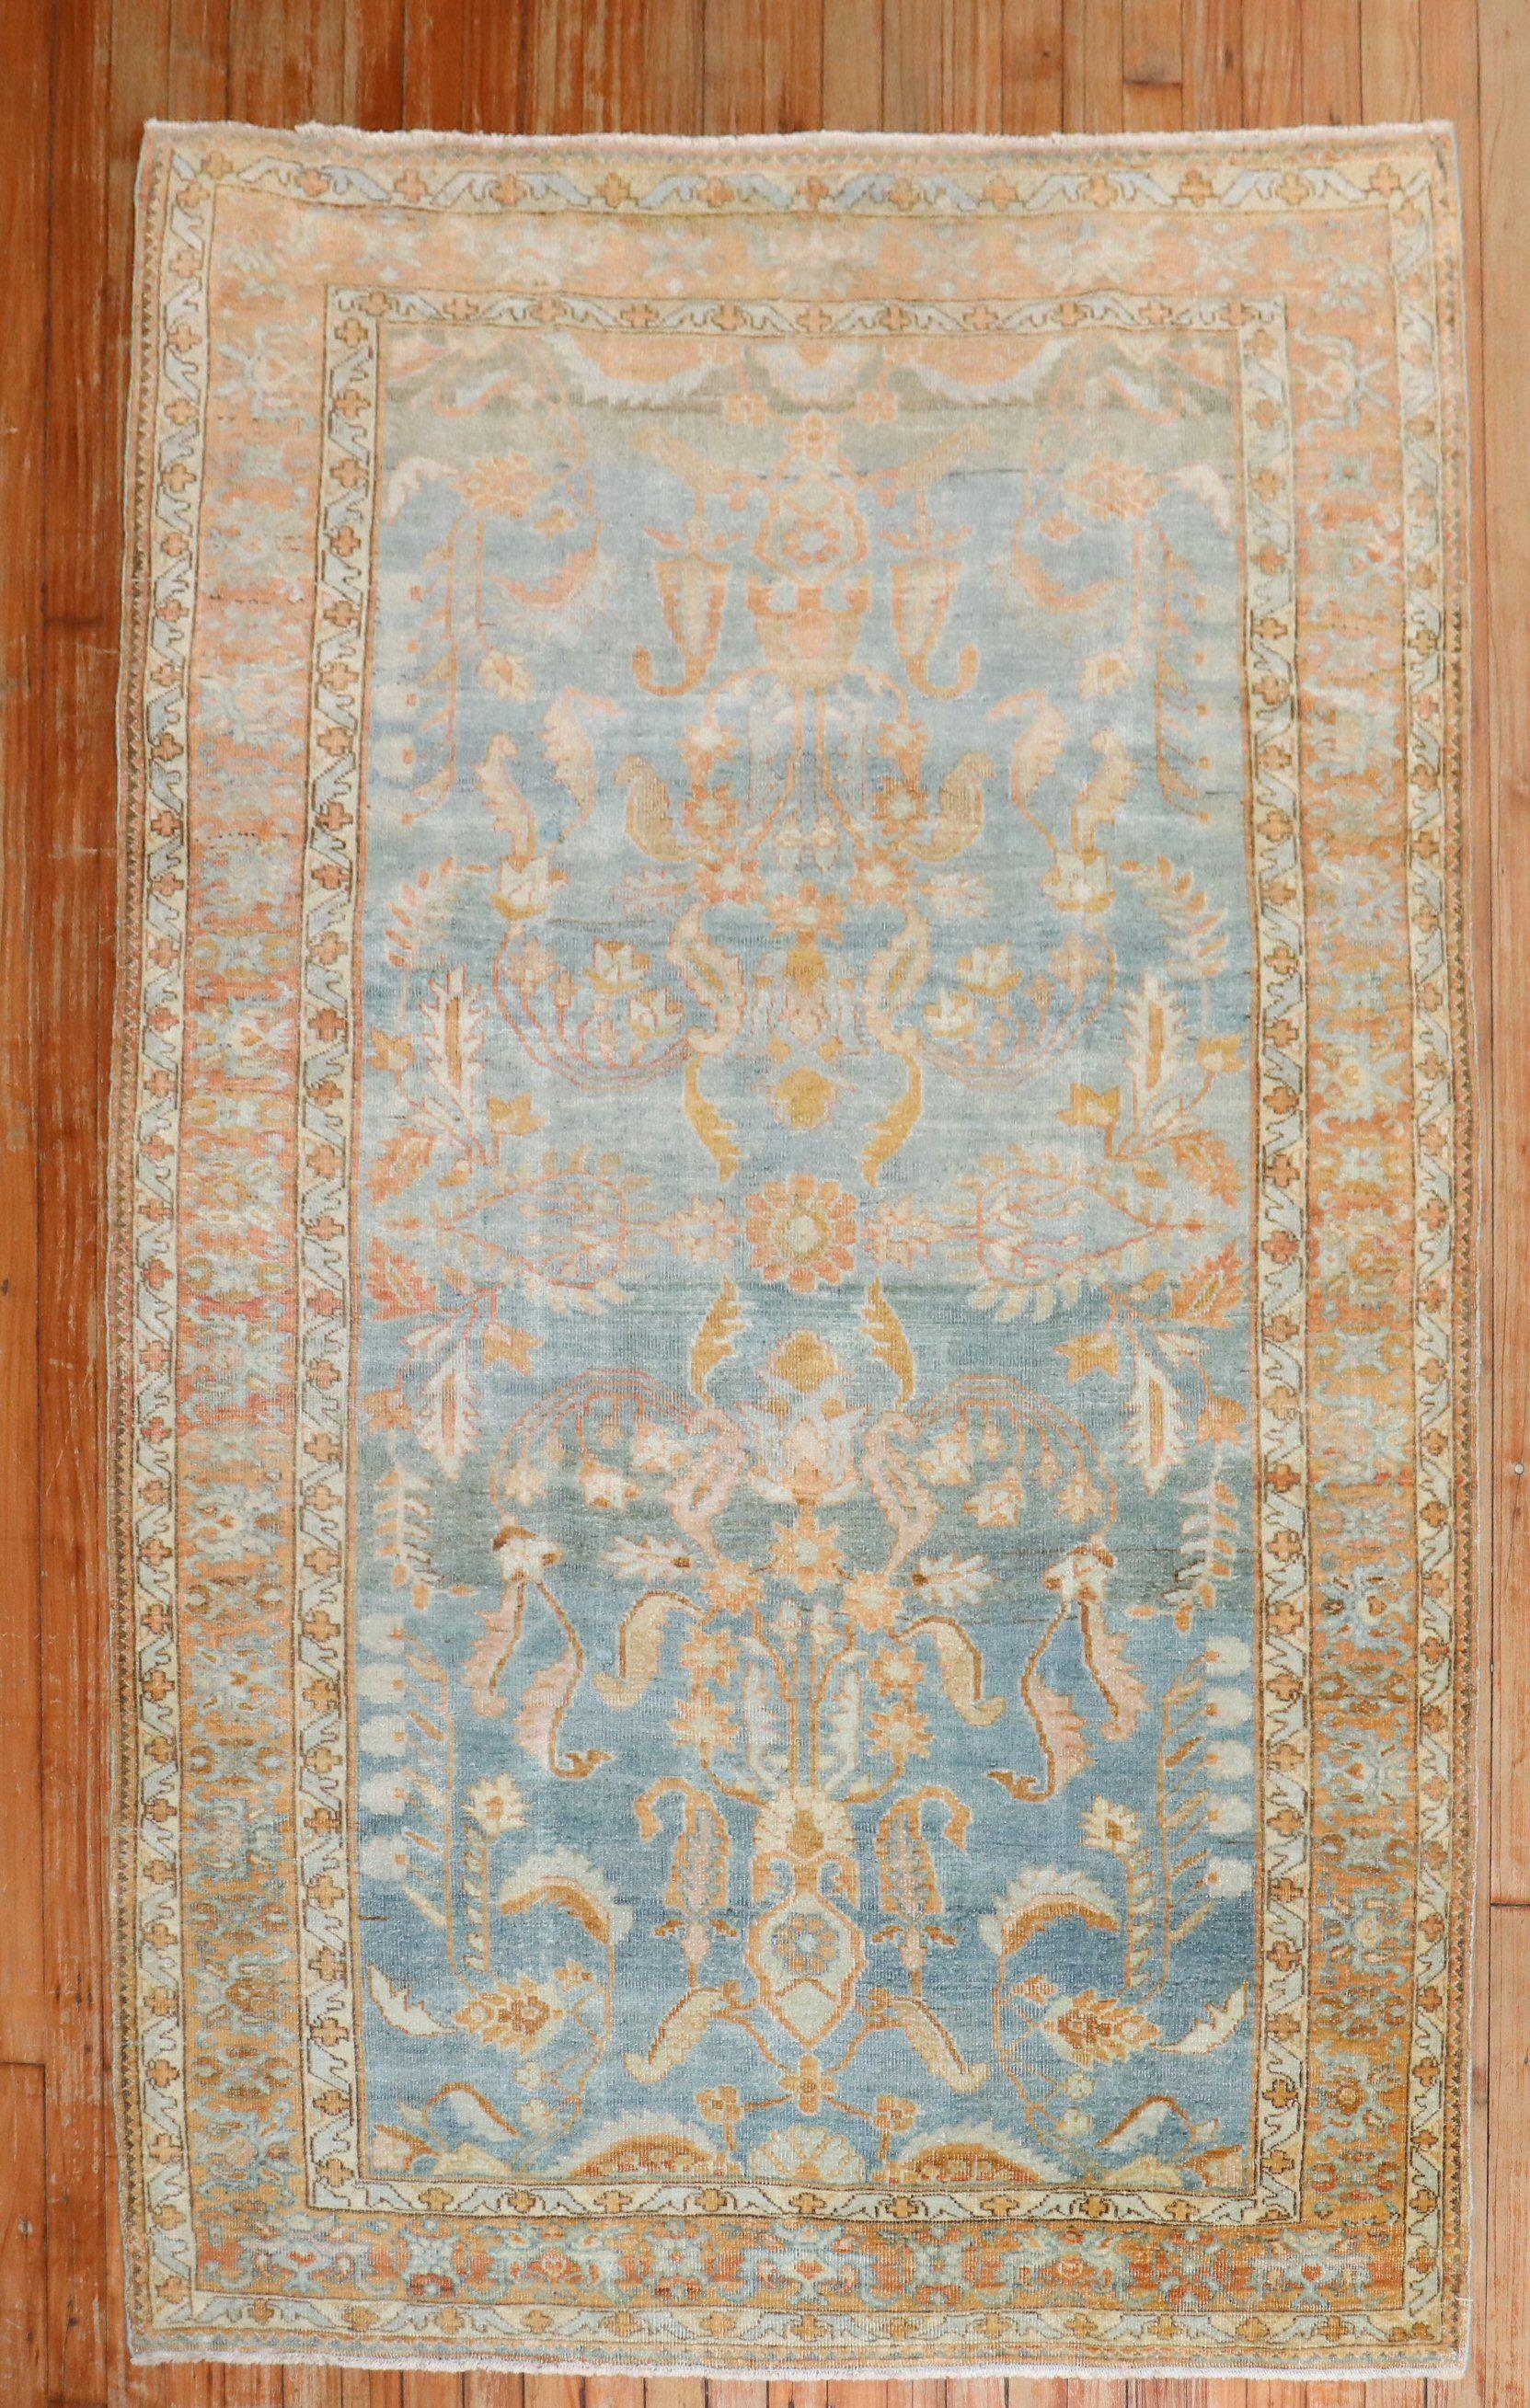 1920er Jahre persischen Sarouk Akzent Größe Teppich mit einem himmelblauen Feld Akzente in Pfirsich
Teppich nein.	j3135
Größe	4' 3